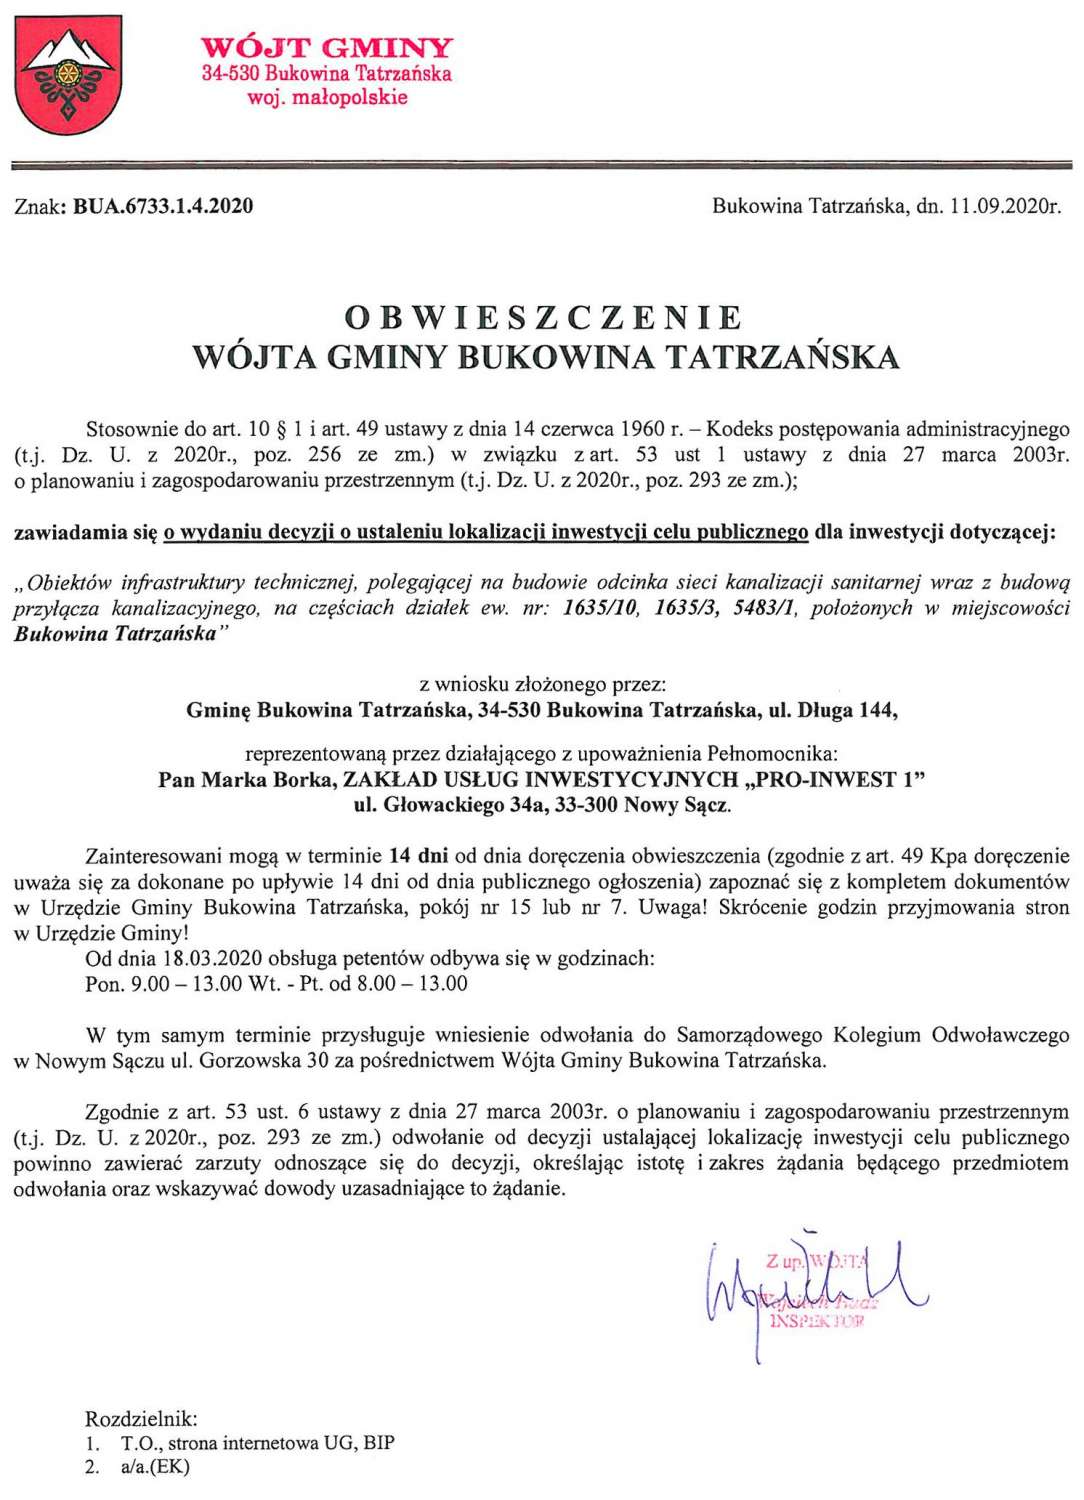 Obwieszczenie Wójta Gminy Bukowina Tatrzańska BUA 6733.1.4.2020